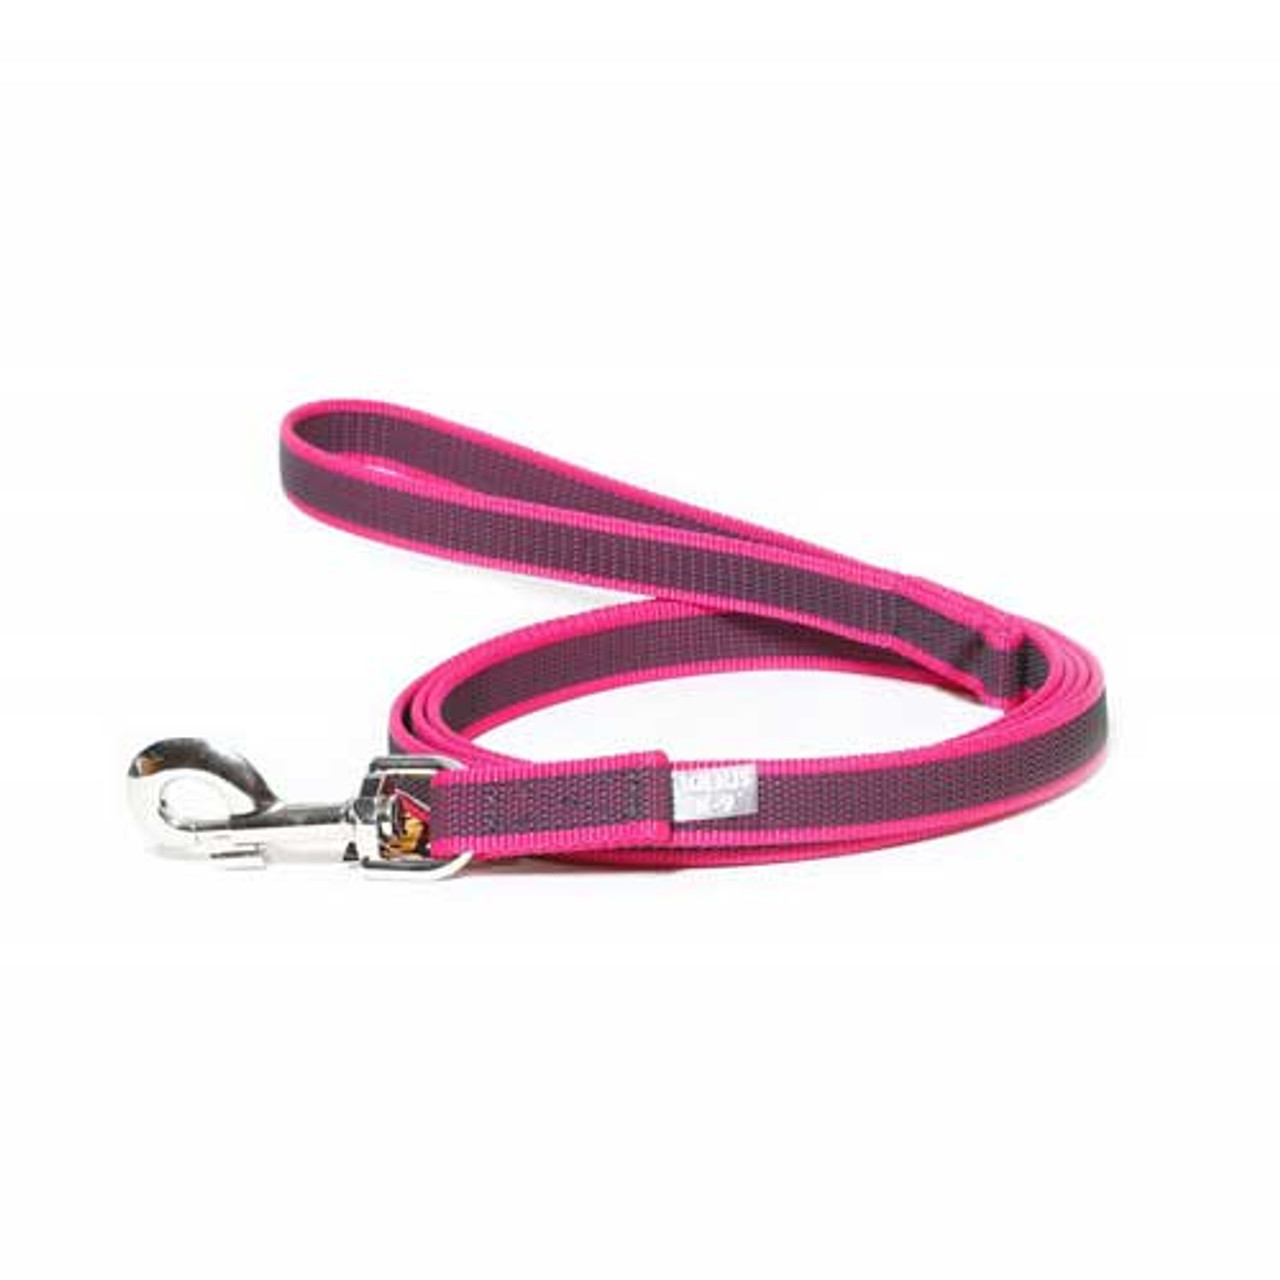 Julius-K9 Color & Grey Super-Grip Leash Pink-Grey Width (0.7"/ 20mm) Length (6.5ft / 2 m) With Handle, Max for 110lb/ 50 kg Dog